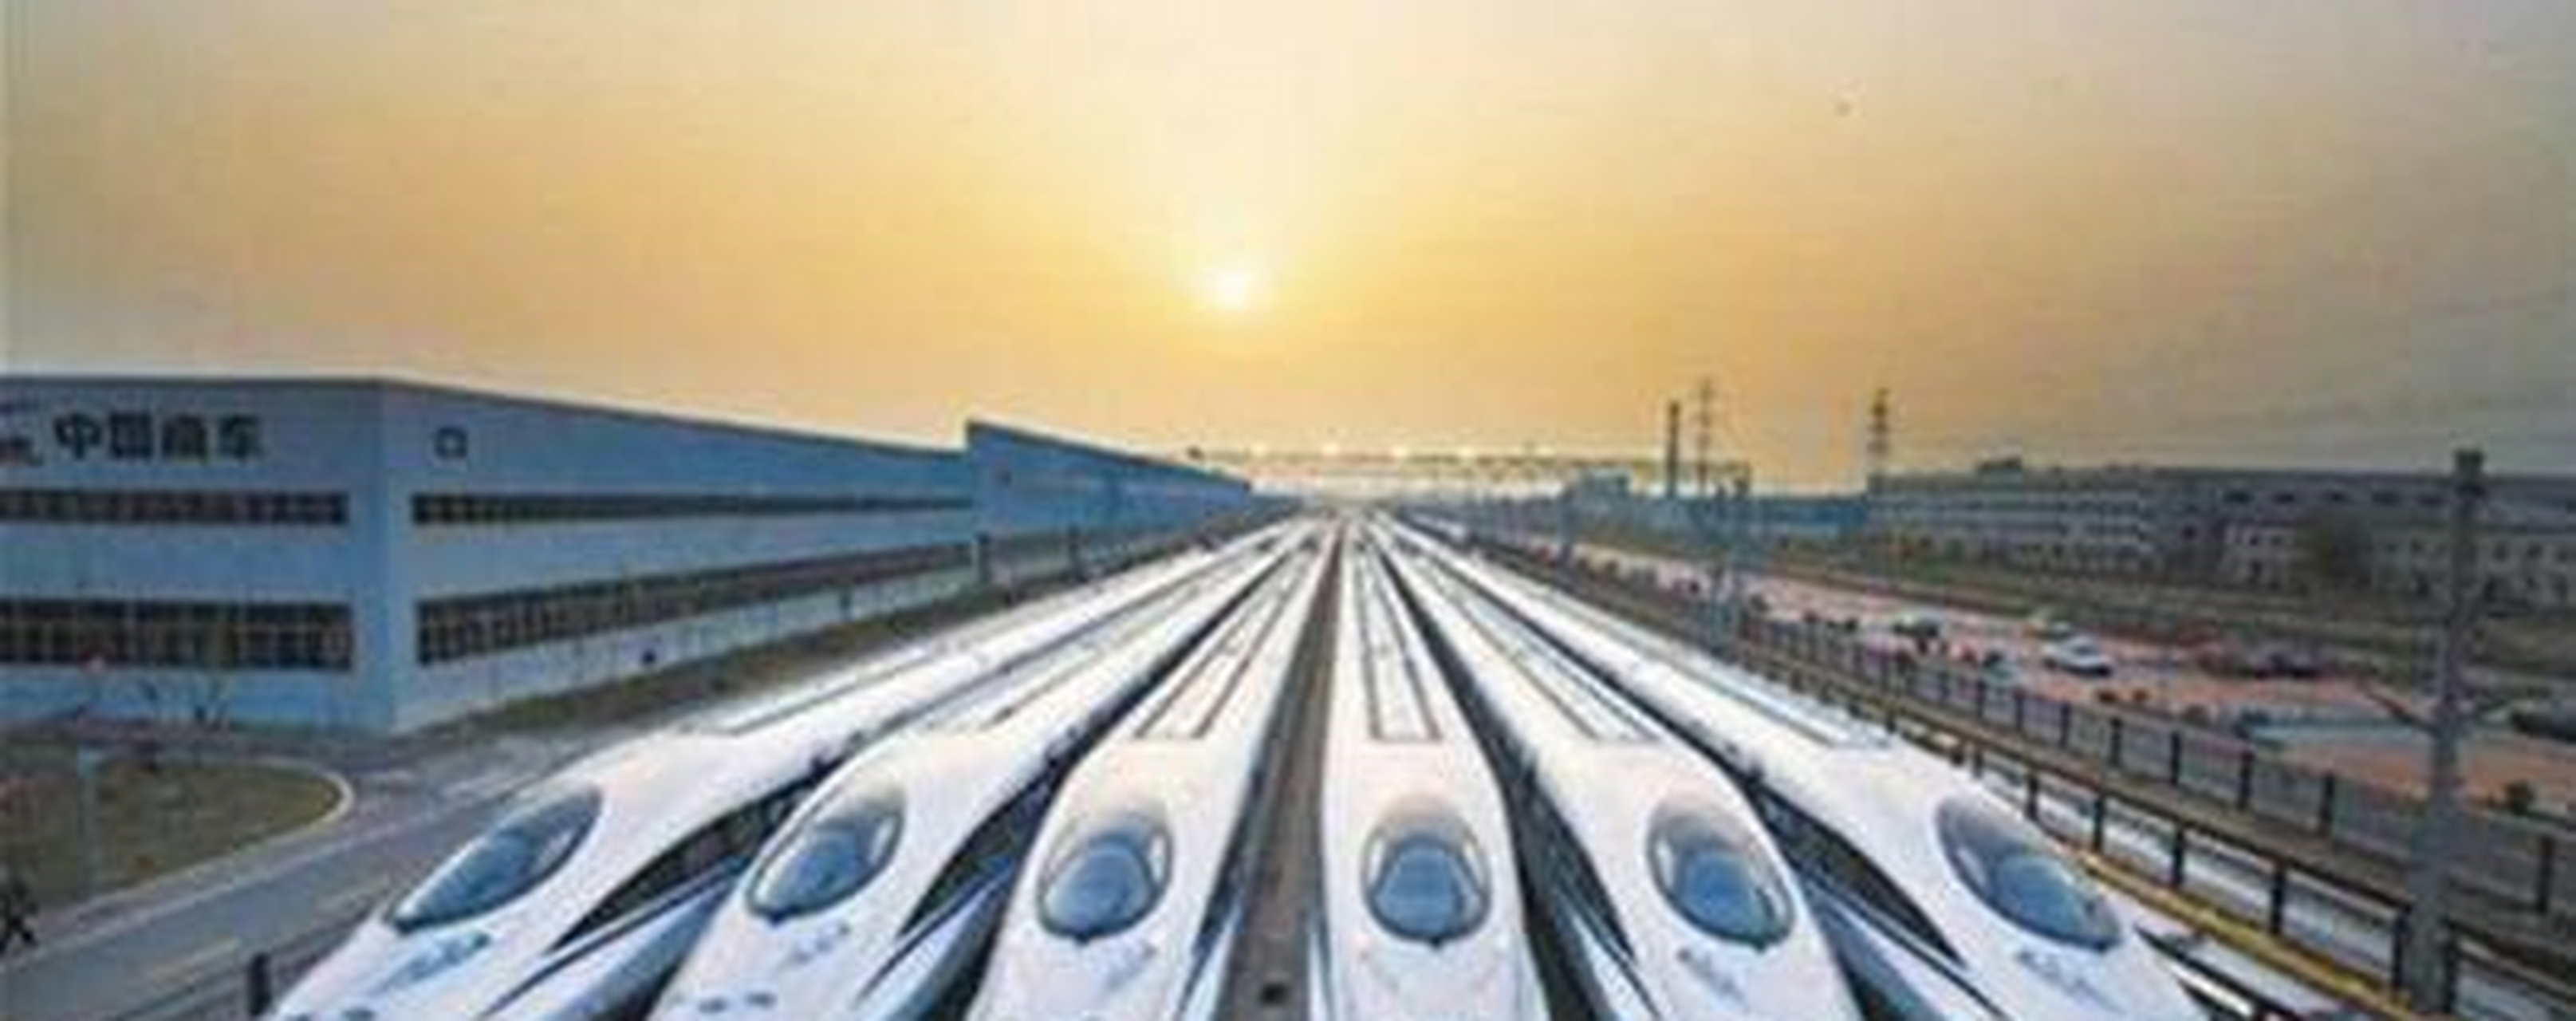 中国的高铁取得了举世瞩目的成就,全国的大多数地区都有高铁,高铁里程